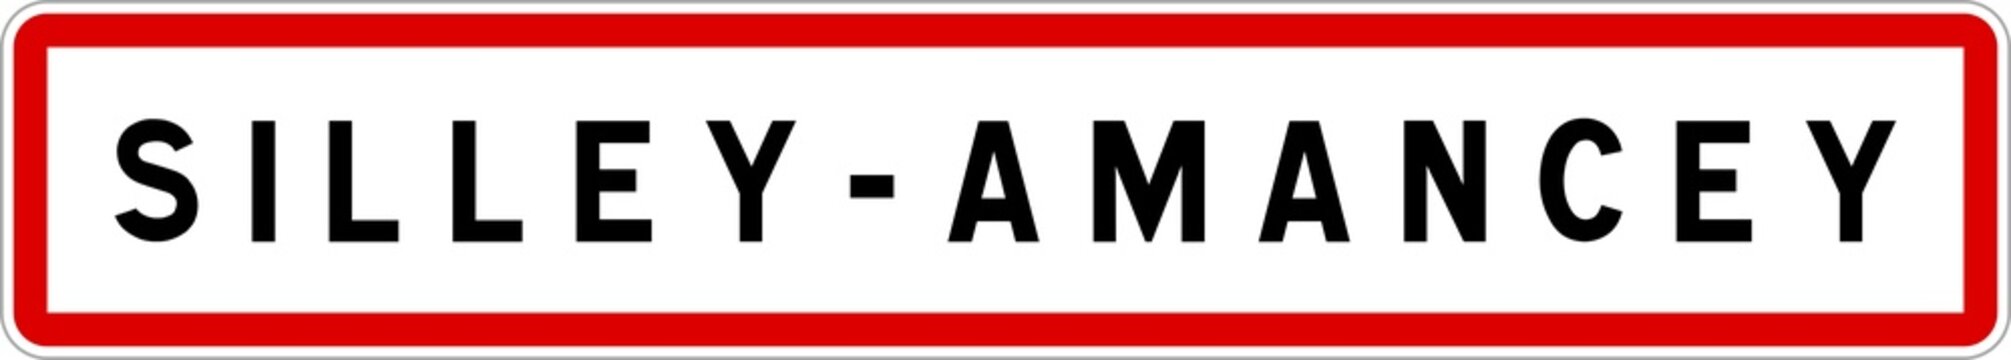 Panneau entrée ville agglomération Silley-Amancey / Town entrance sign Silley-Amancey